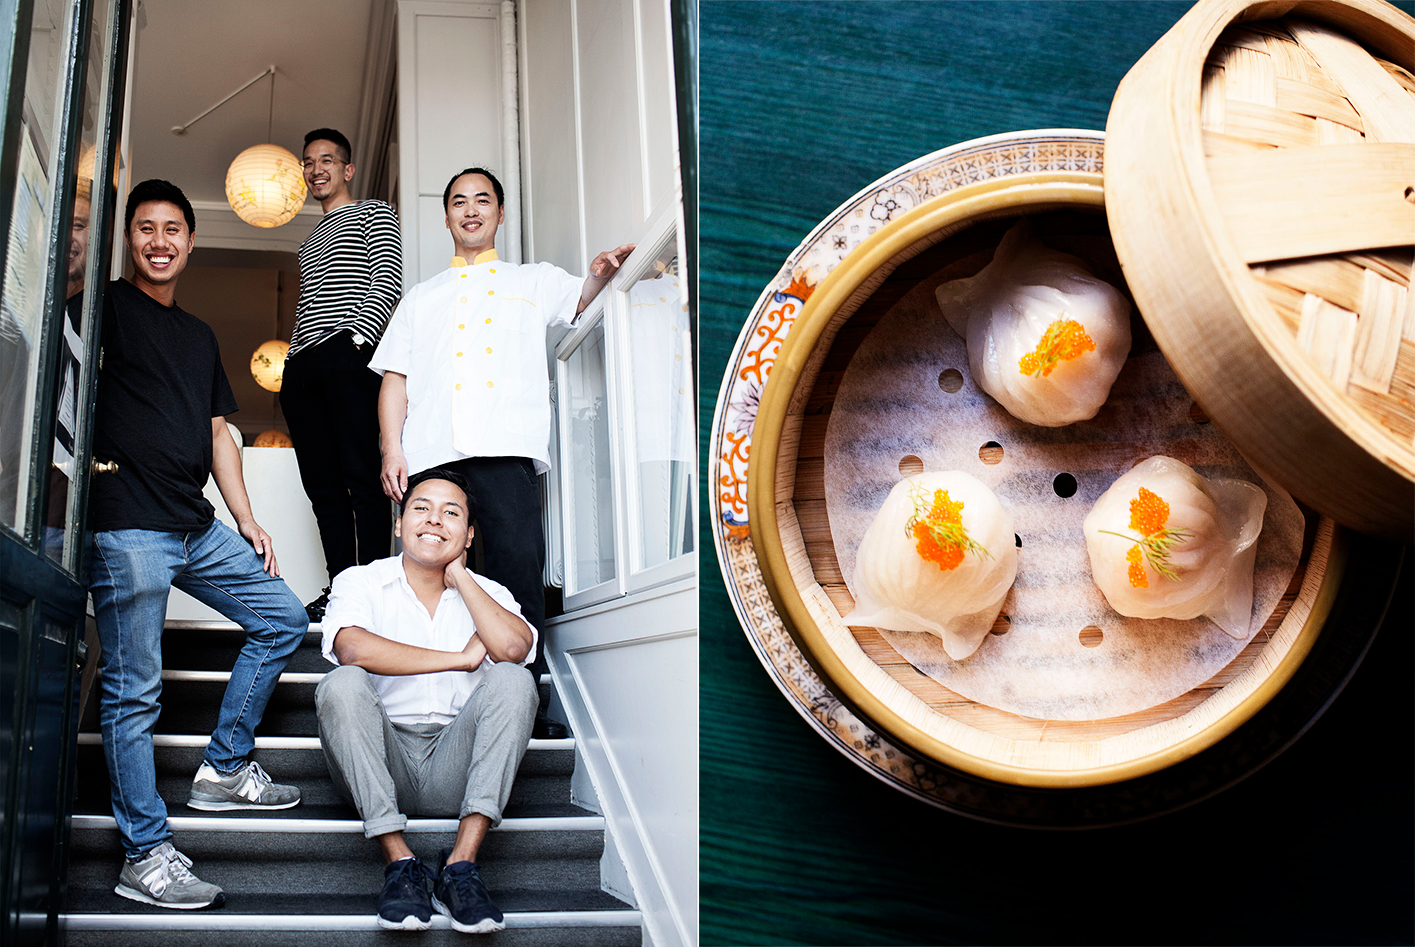 klik bluse Bering strædet Den her kinesiske restaurant i København gør oprør mod friture og buffet